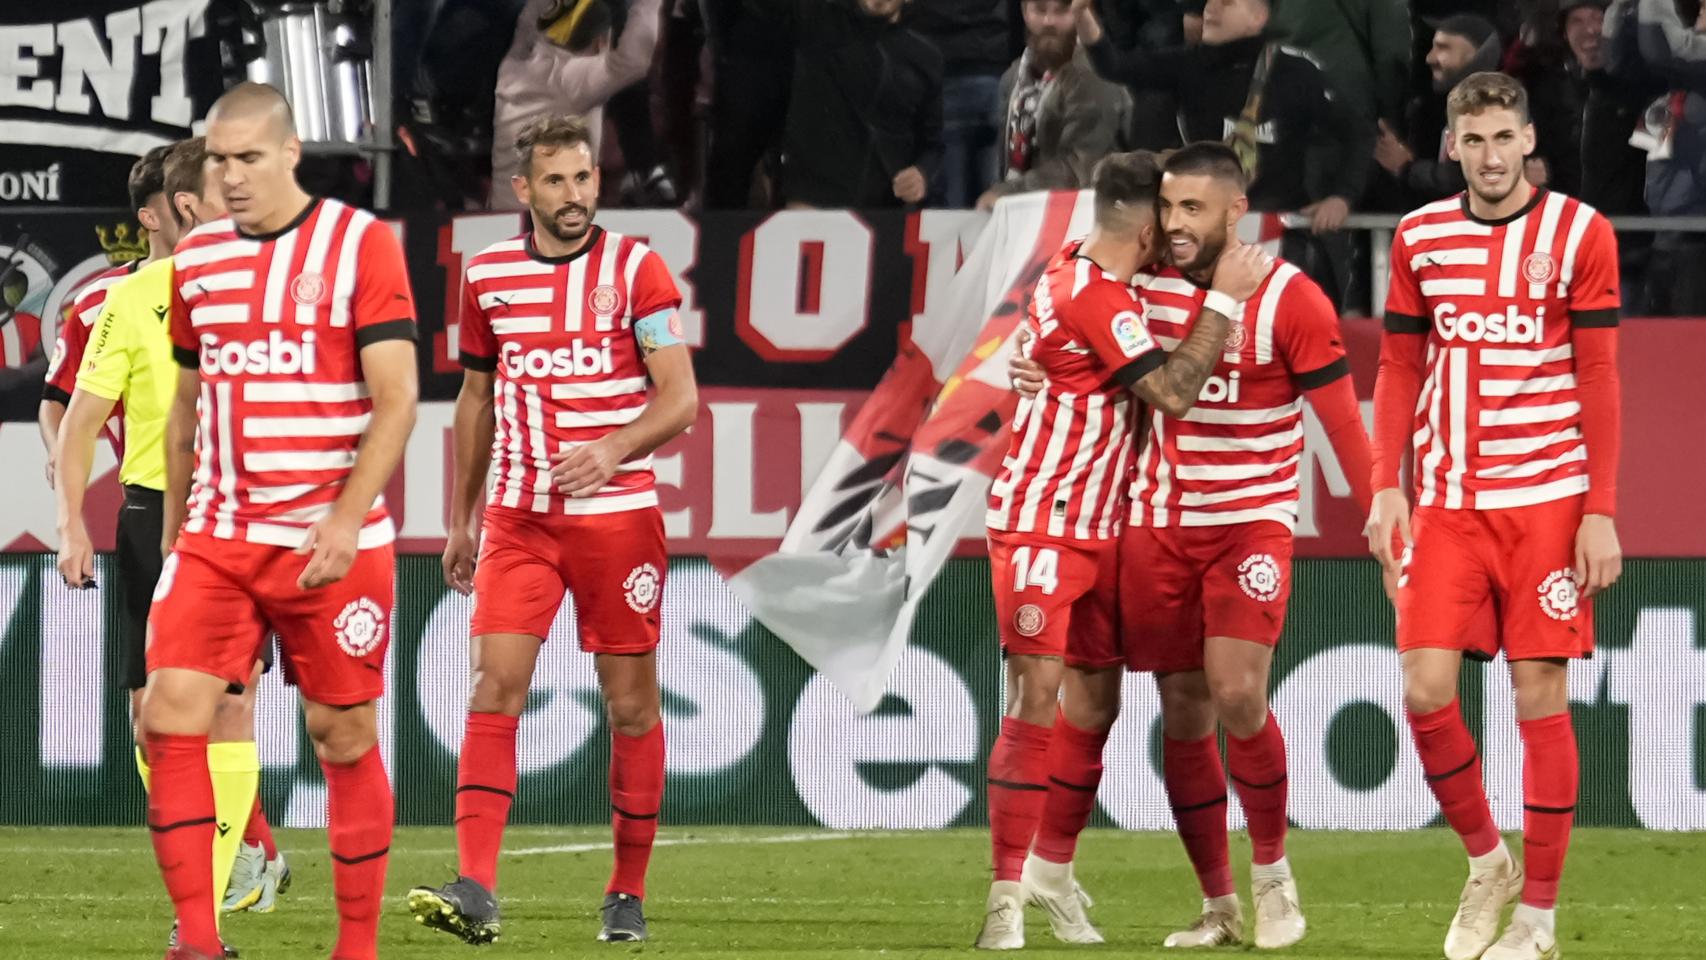 Girona 2 - 1 Athletic Club, La Liga  Resultado, resumen y estadísticas del  partido